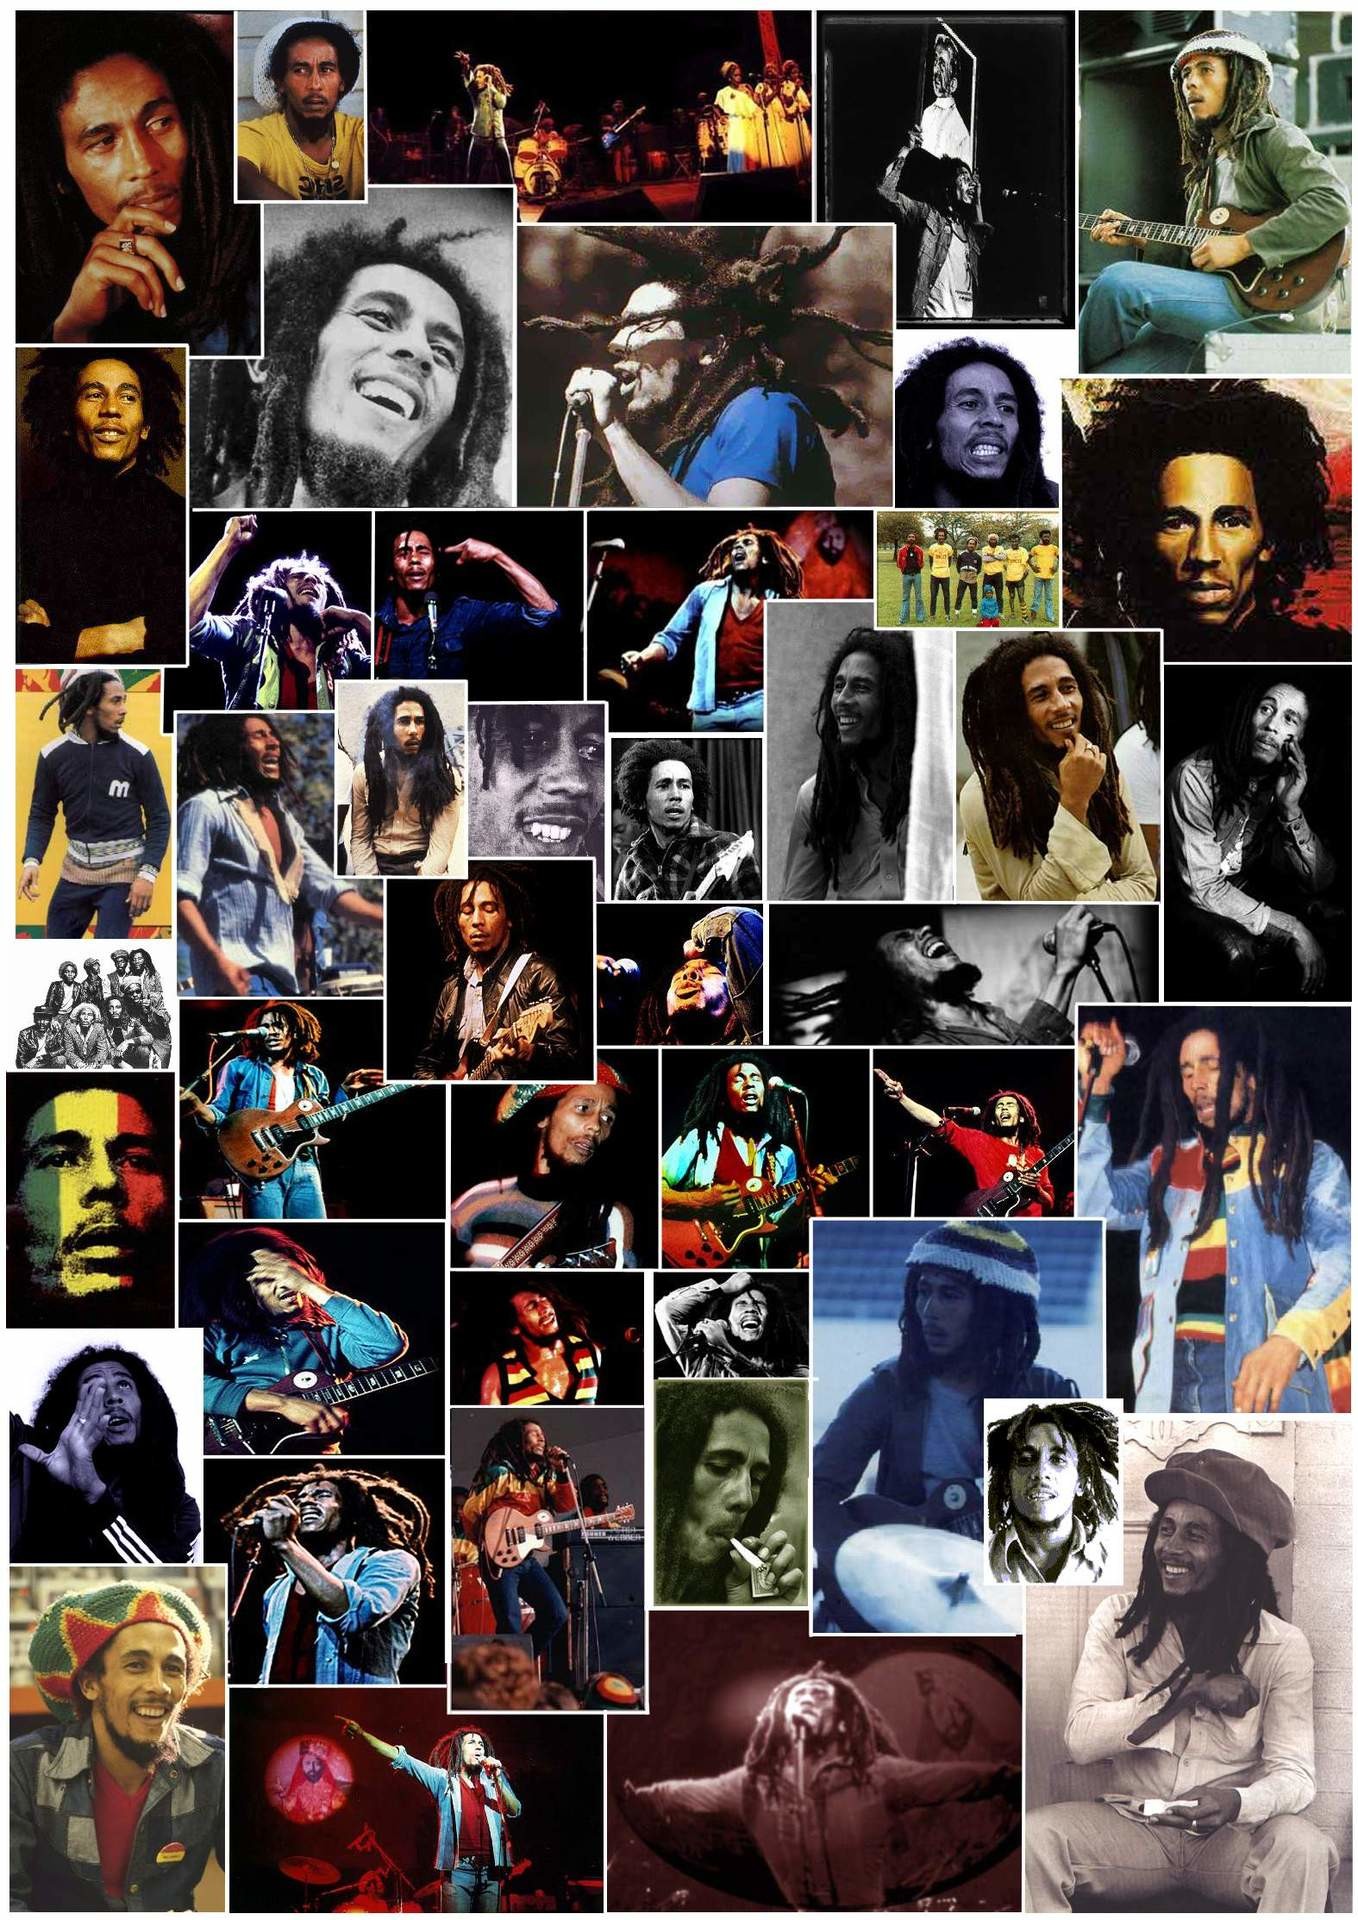 1358x1920 Bob Marley images bob marley HD wallpaper and background photos